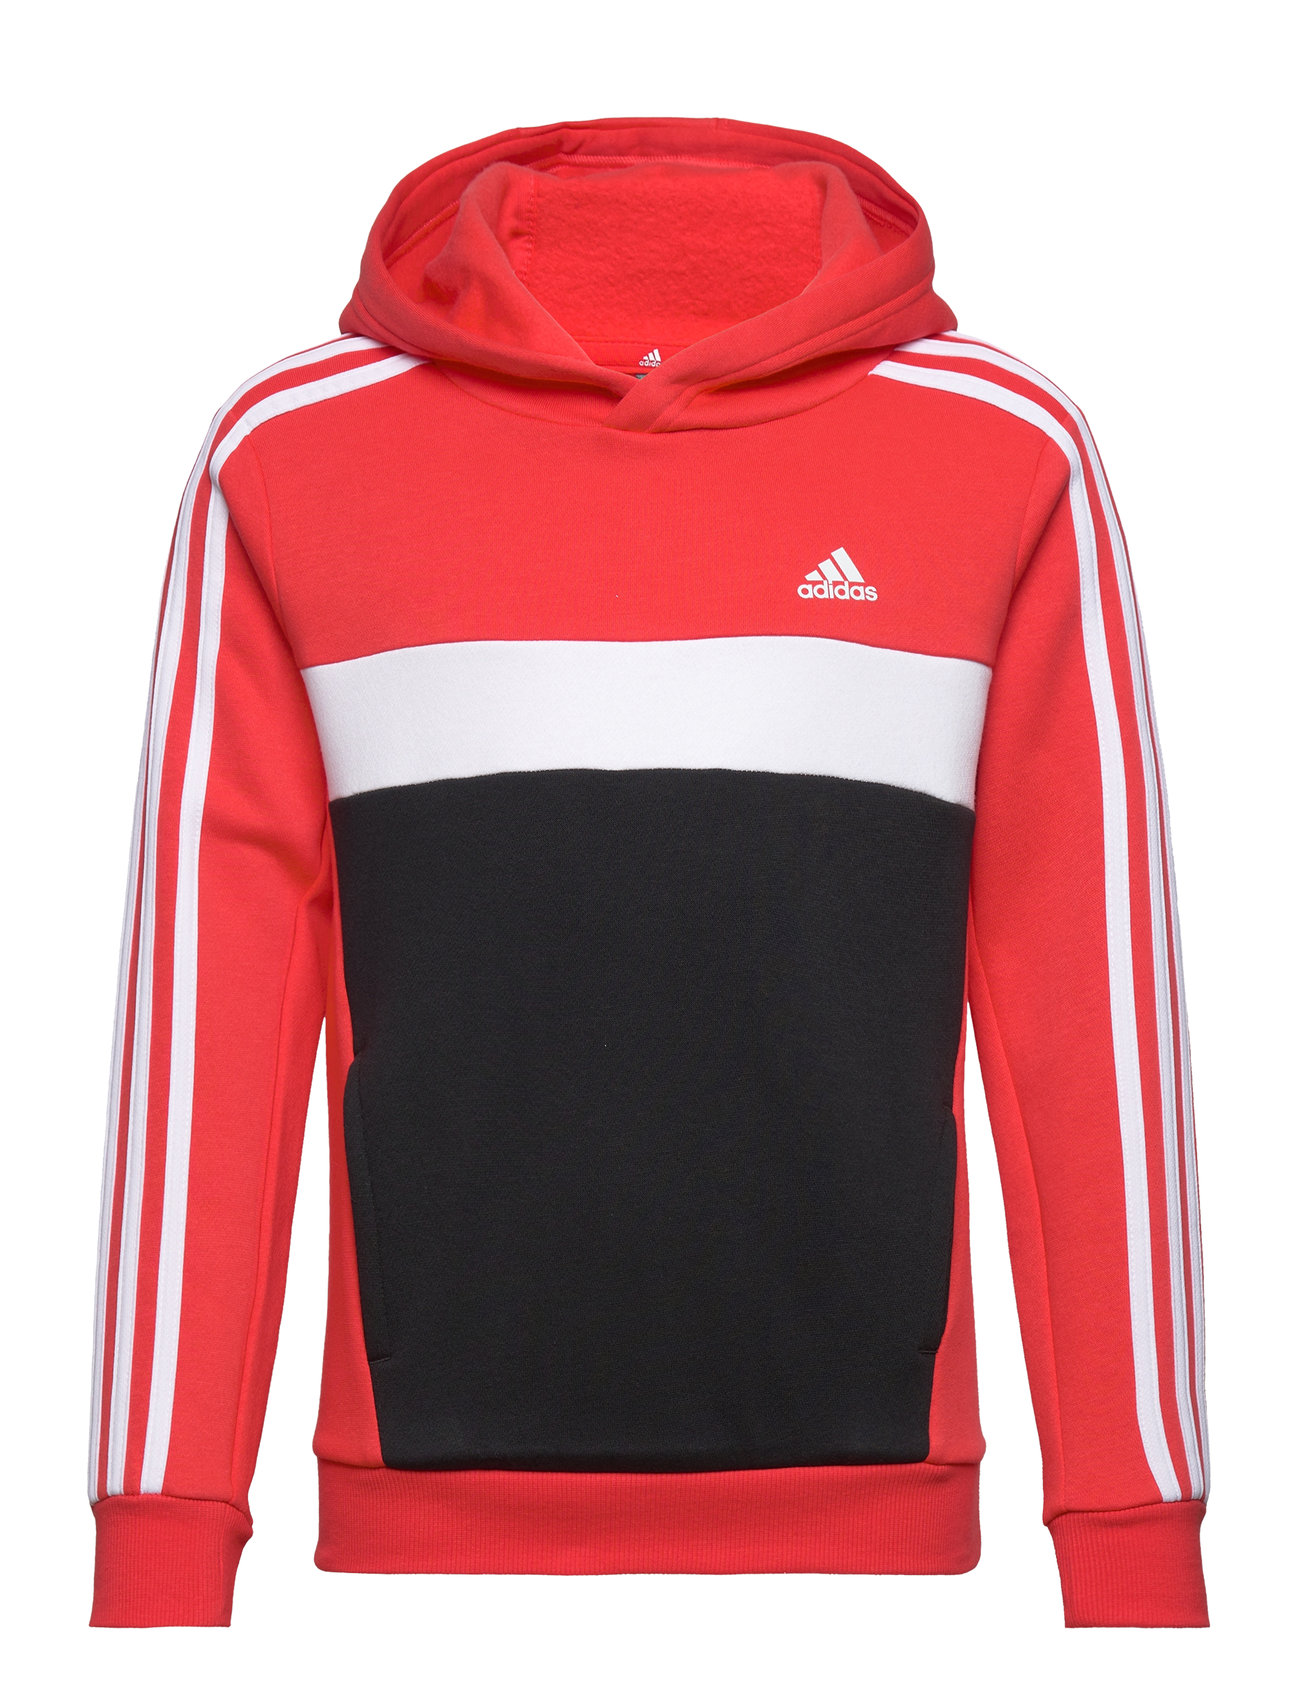 J 3S Tib Fl Hd Sport Sweatshirts & Hoodies Hoodies Red Adidas Sportswear